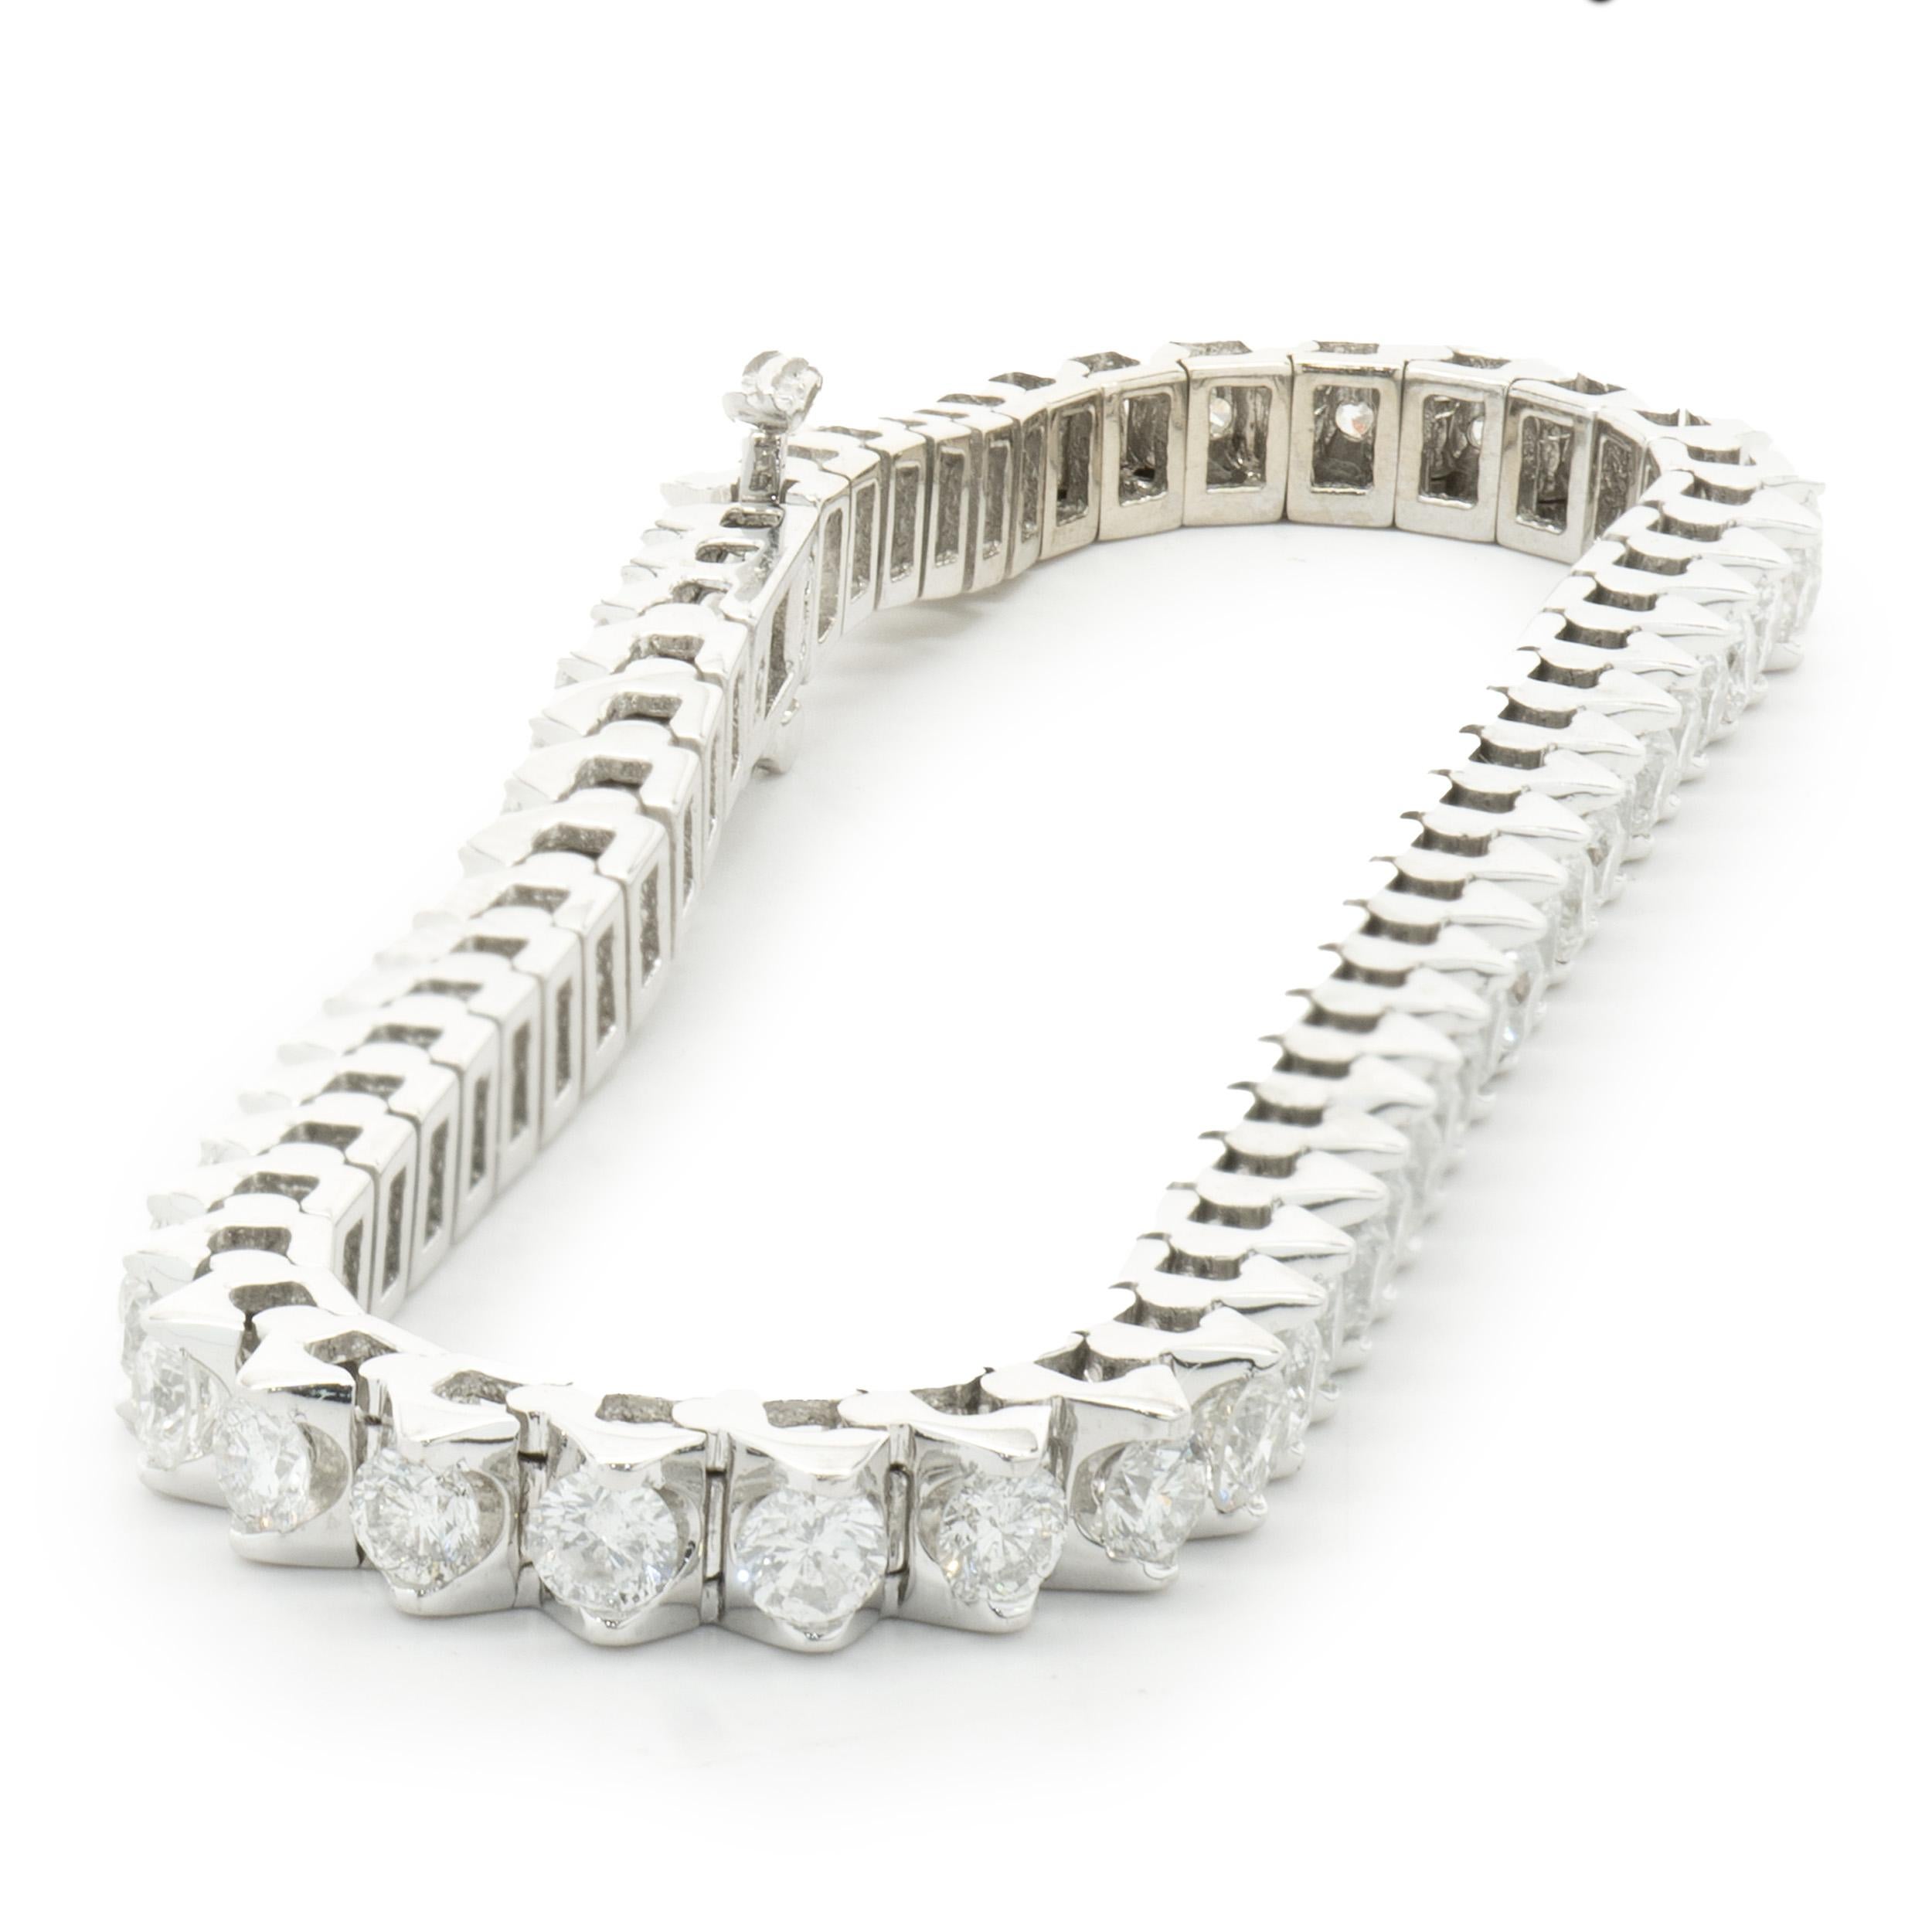 Designer : design personnalisé
Matériau : Or blanc 14K
Diamant : 56 brillants ronds = 5.00cttw
Couleur : H
Clarté : SI2
Dimensions : le bracelet convient à un poignet de 6.75 pouces maximum.
Poids : 17,89 grammes